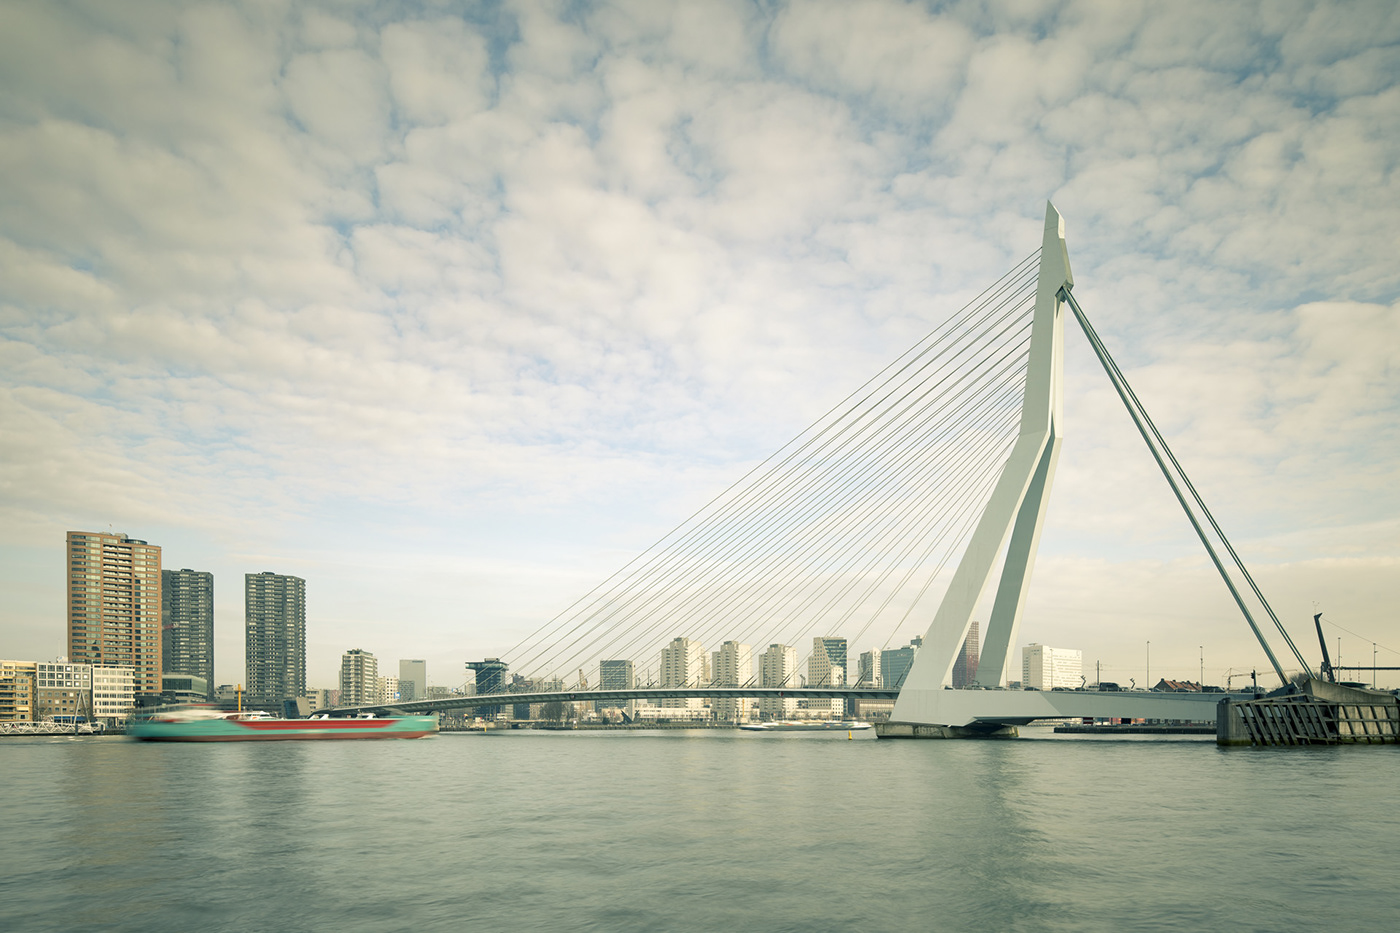 The Netherlands Holland Rotterdam Europe architecture cityscape urbanism   modern design Erasmus Bridge